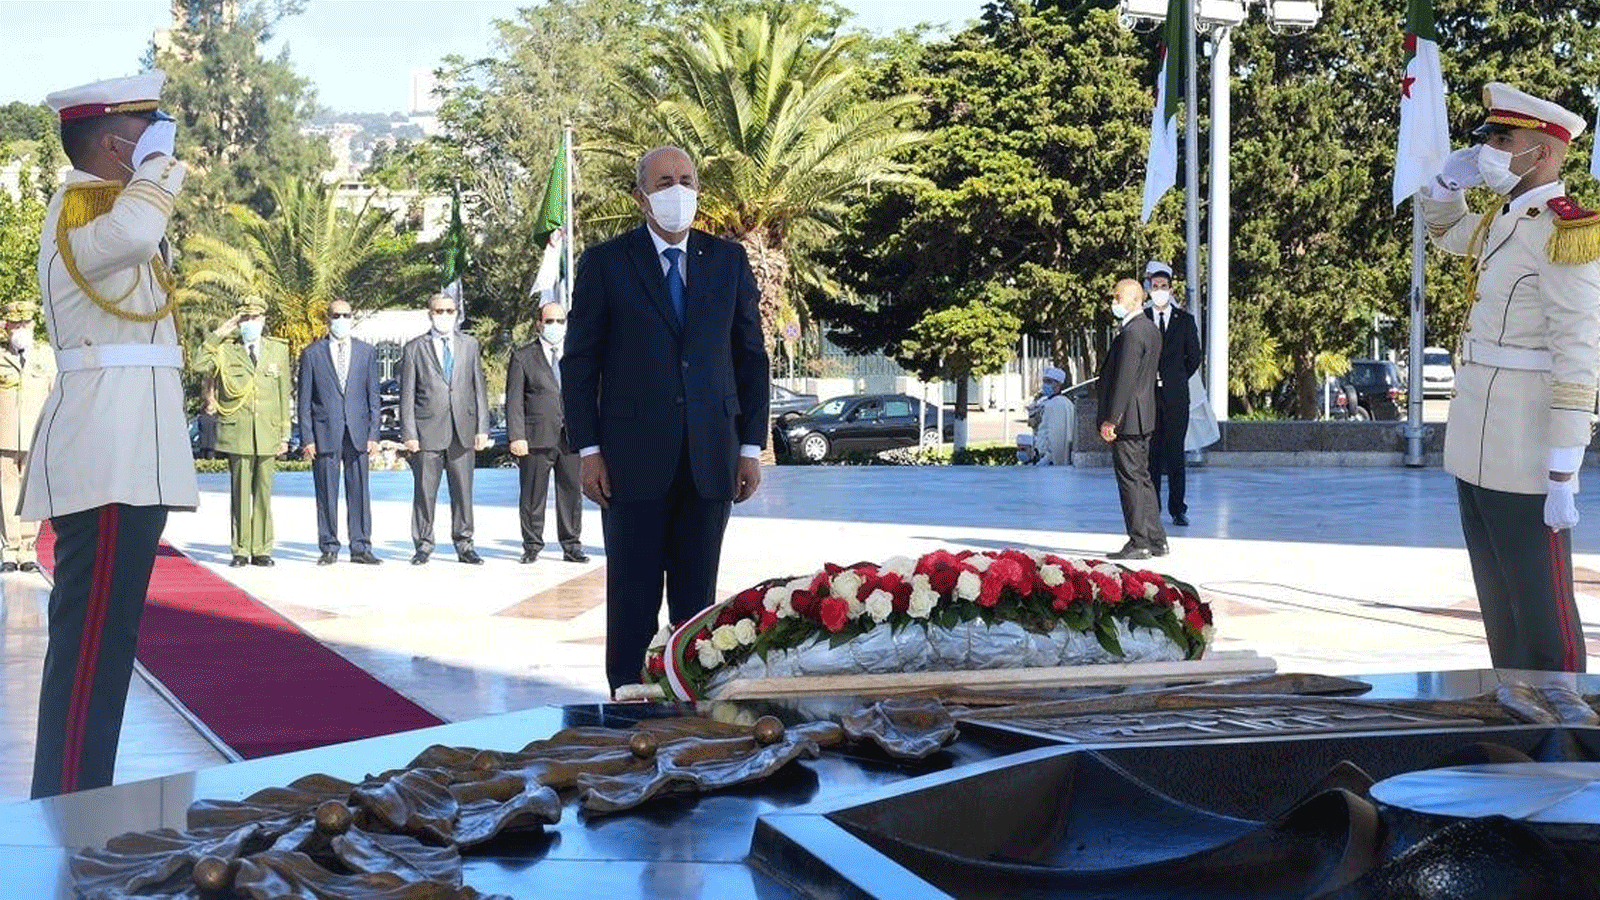 الرئيس الجزائري تبون يقف دقيقة صمت خلال مراسم لإلقاء رفات 24 من المقاومين العائدين من باريس. في العاصمة الجزائر بتاريخ 5 تموز/ يوليو 2020.